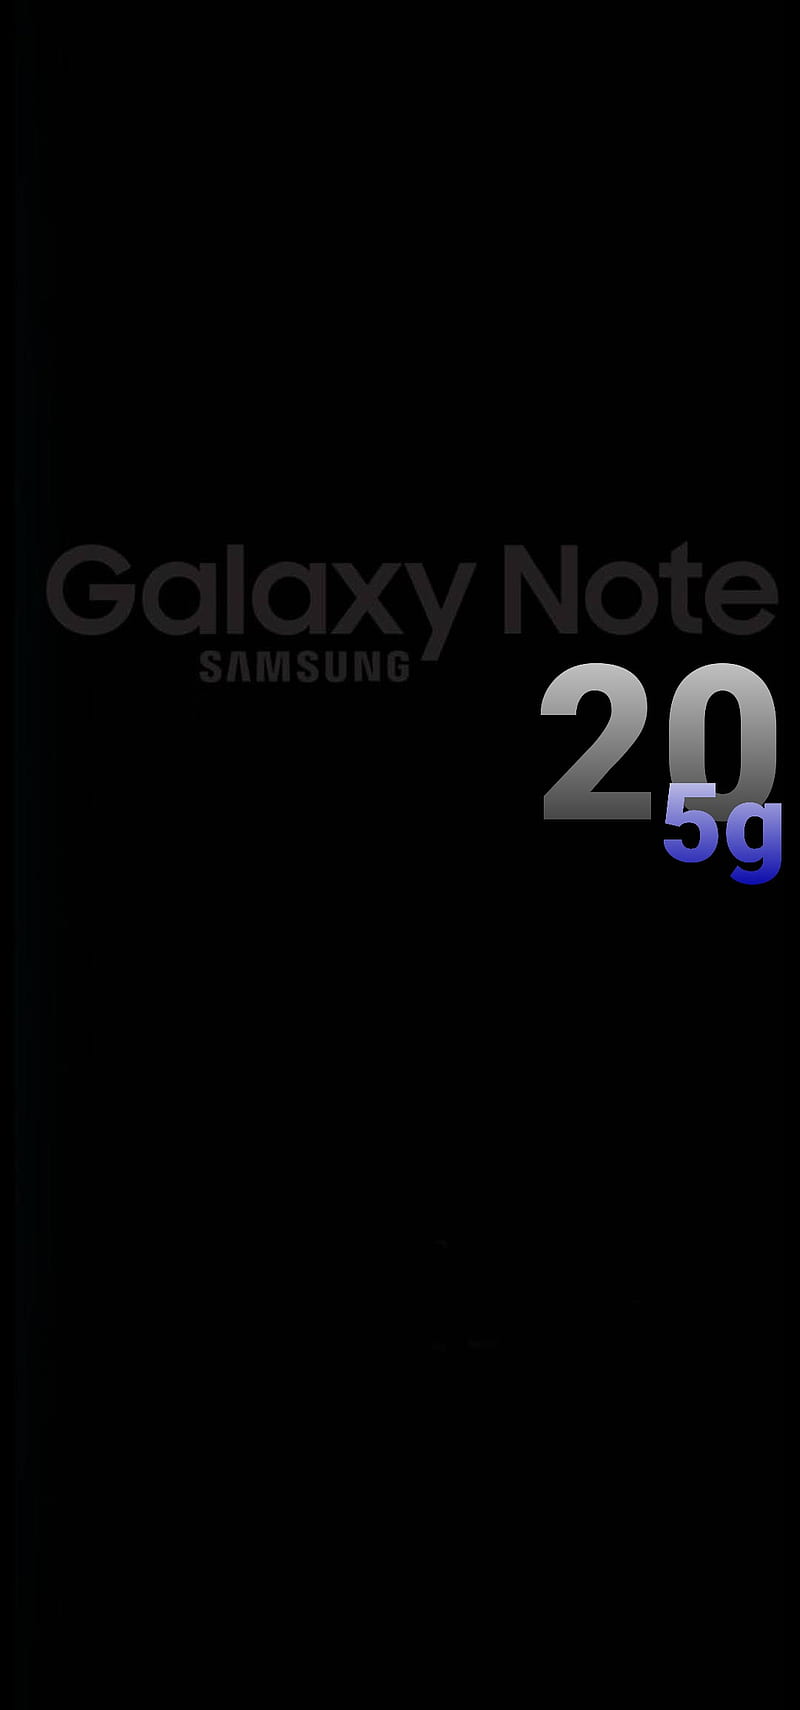 Samsung galaxy note 20 wallpapers: Bộ sưu tập những hình nền độc đáo, đẹp mắt sẽ khiến cho chiếc điện thoại của bạn thêm phần nổi bật. Hãy khám phá sự đa dạng của bộ sưu tập và tận hưởng trải nghiệm tuyệt vời với các hình nền của dòng điện thoại này nhé.